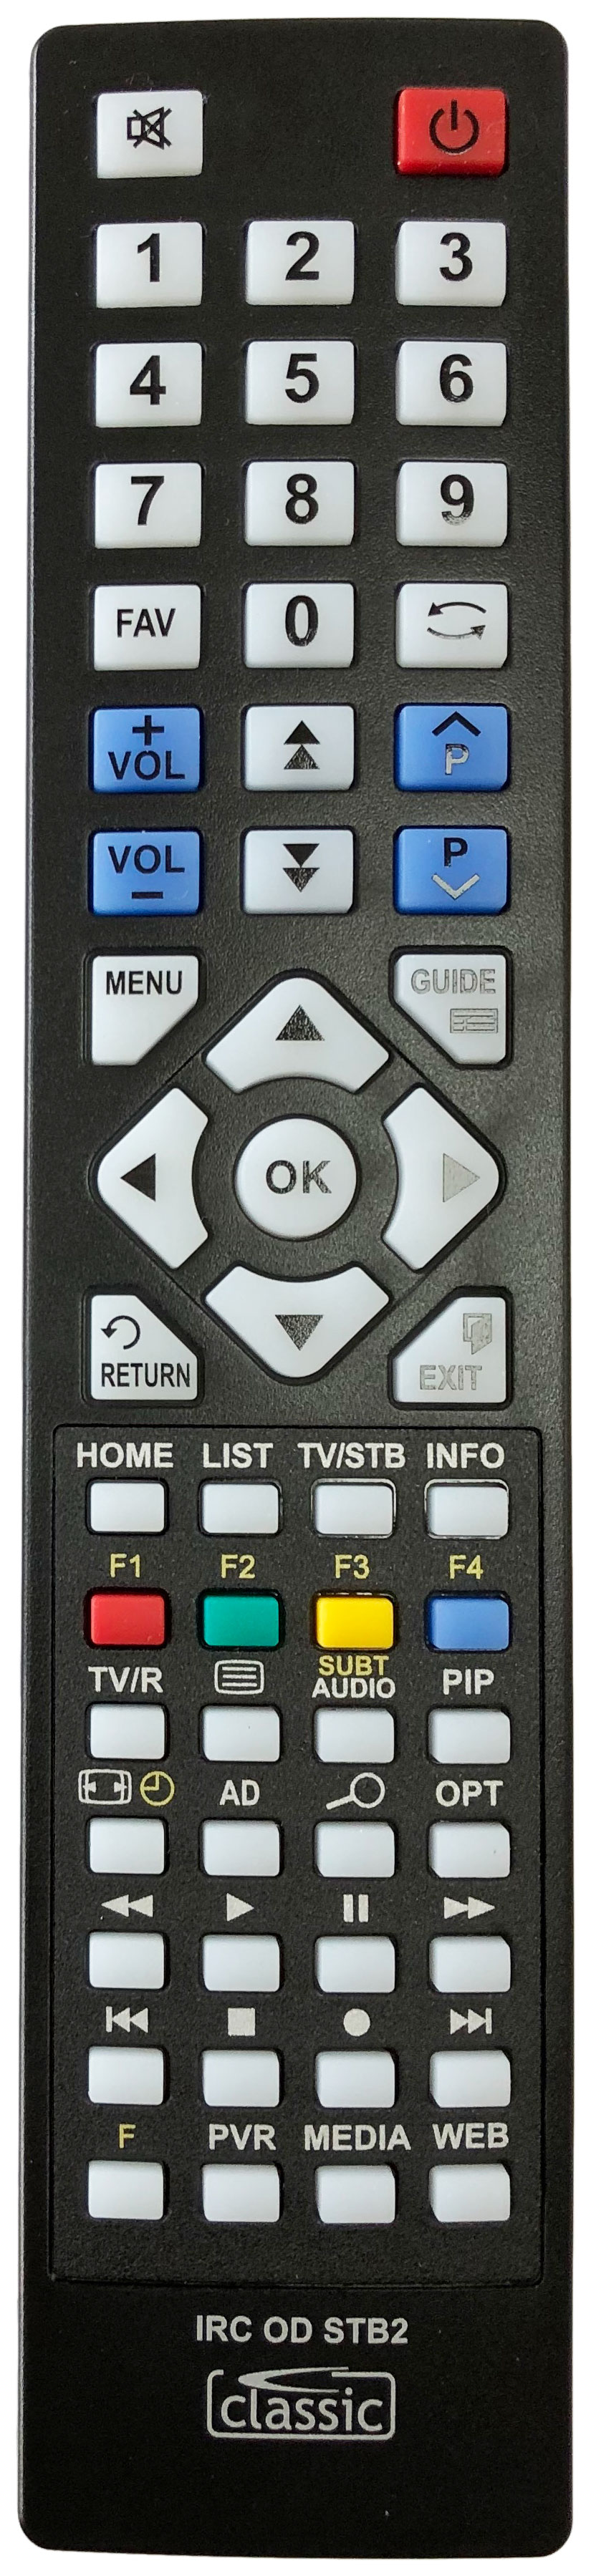 HUMAX FTV-5600 Remote Control